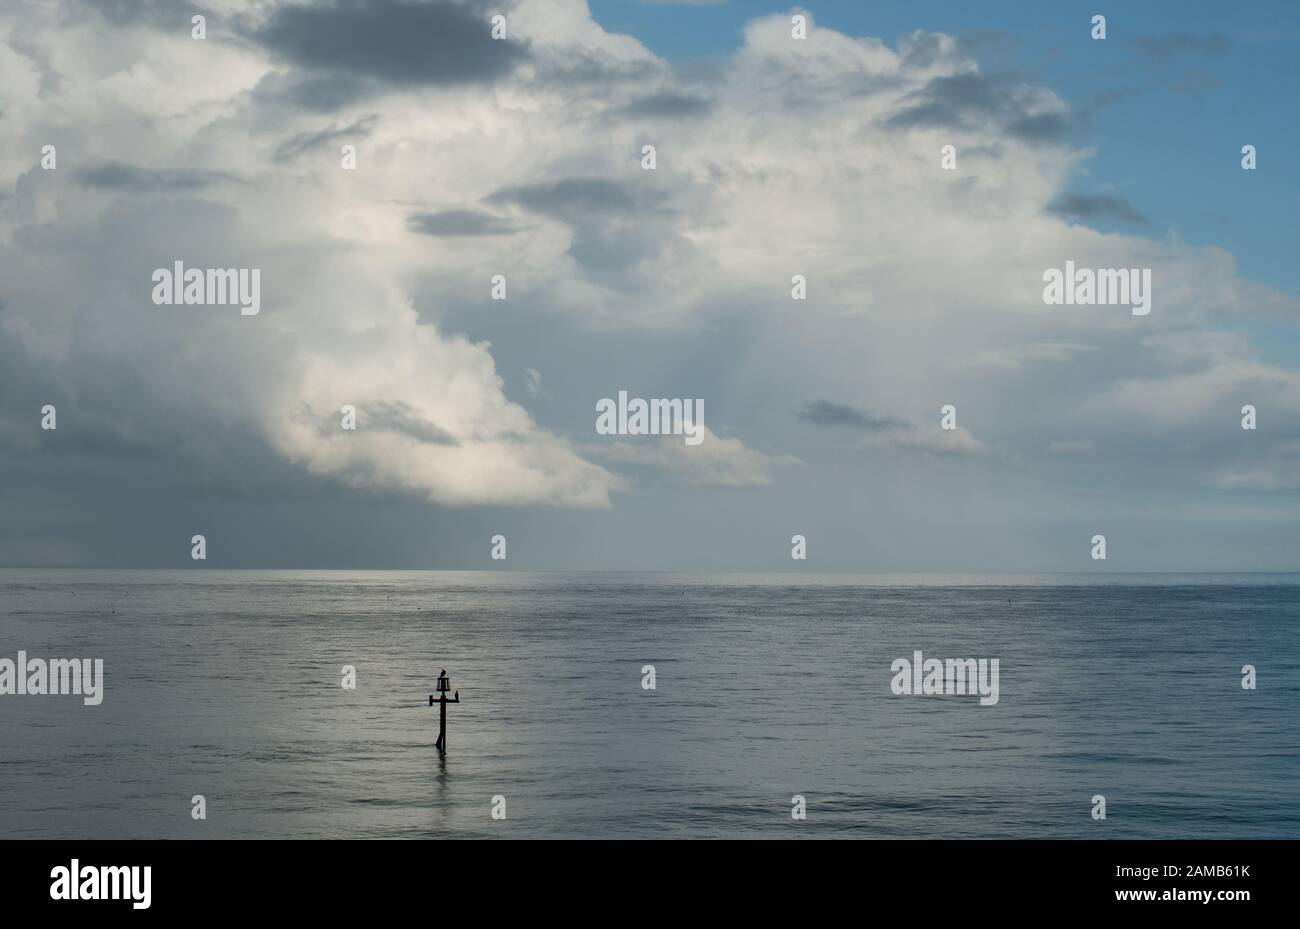 Ein minimalistisches, friedliches Bild von Meer, Horizont, Wolke und blauem Himmel vor der Norfolkküste, das in angenehmem Licht gefangen ist Stockfoto